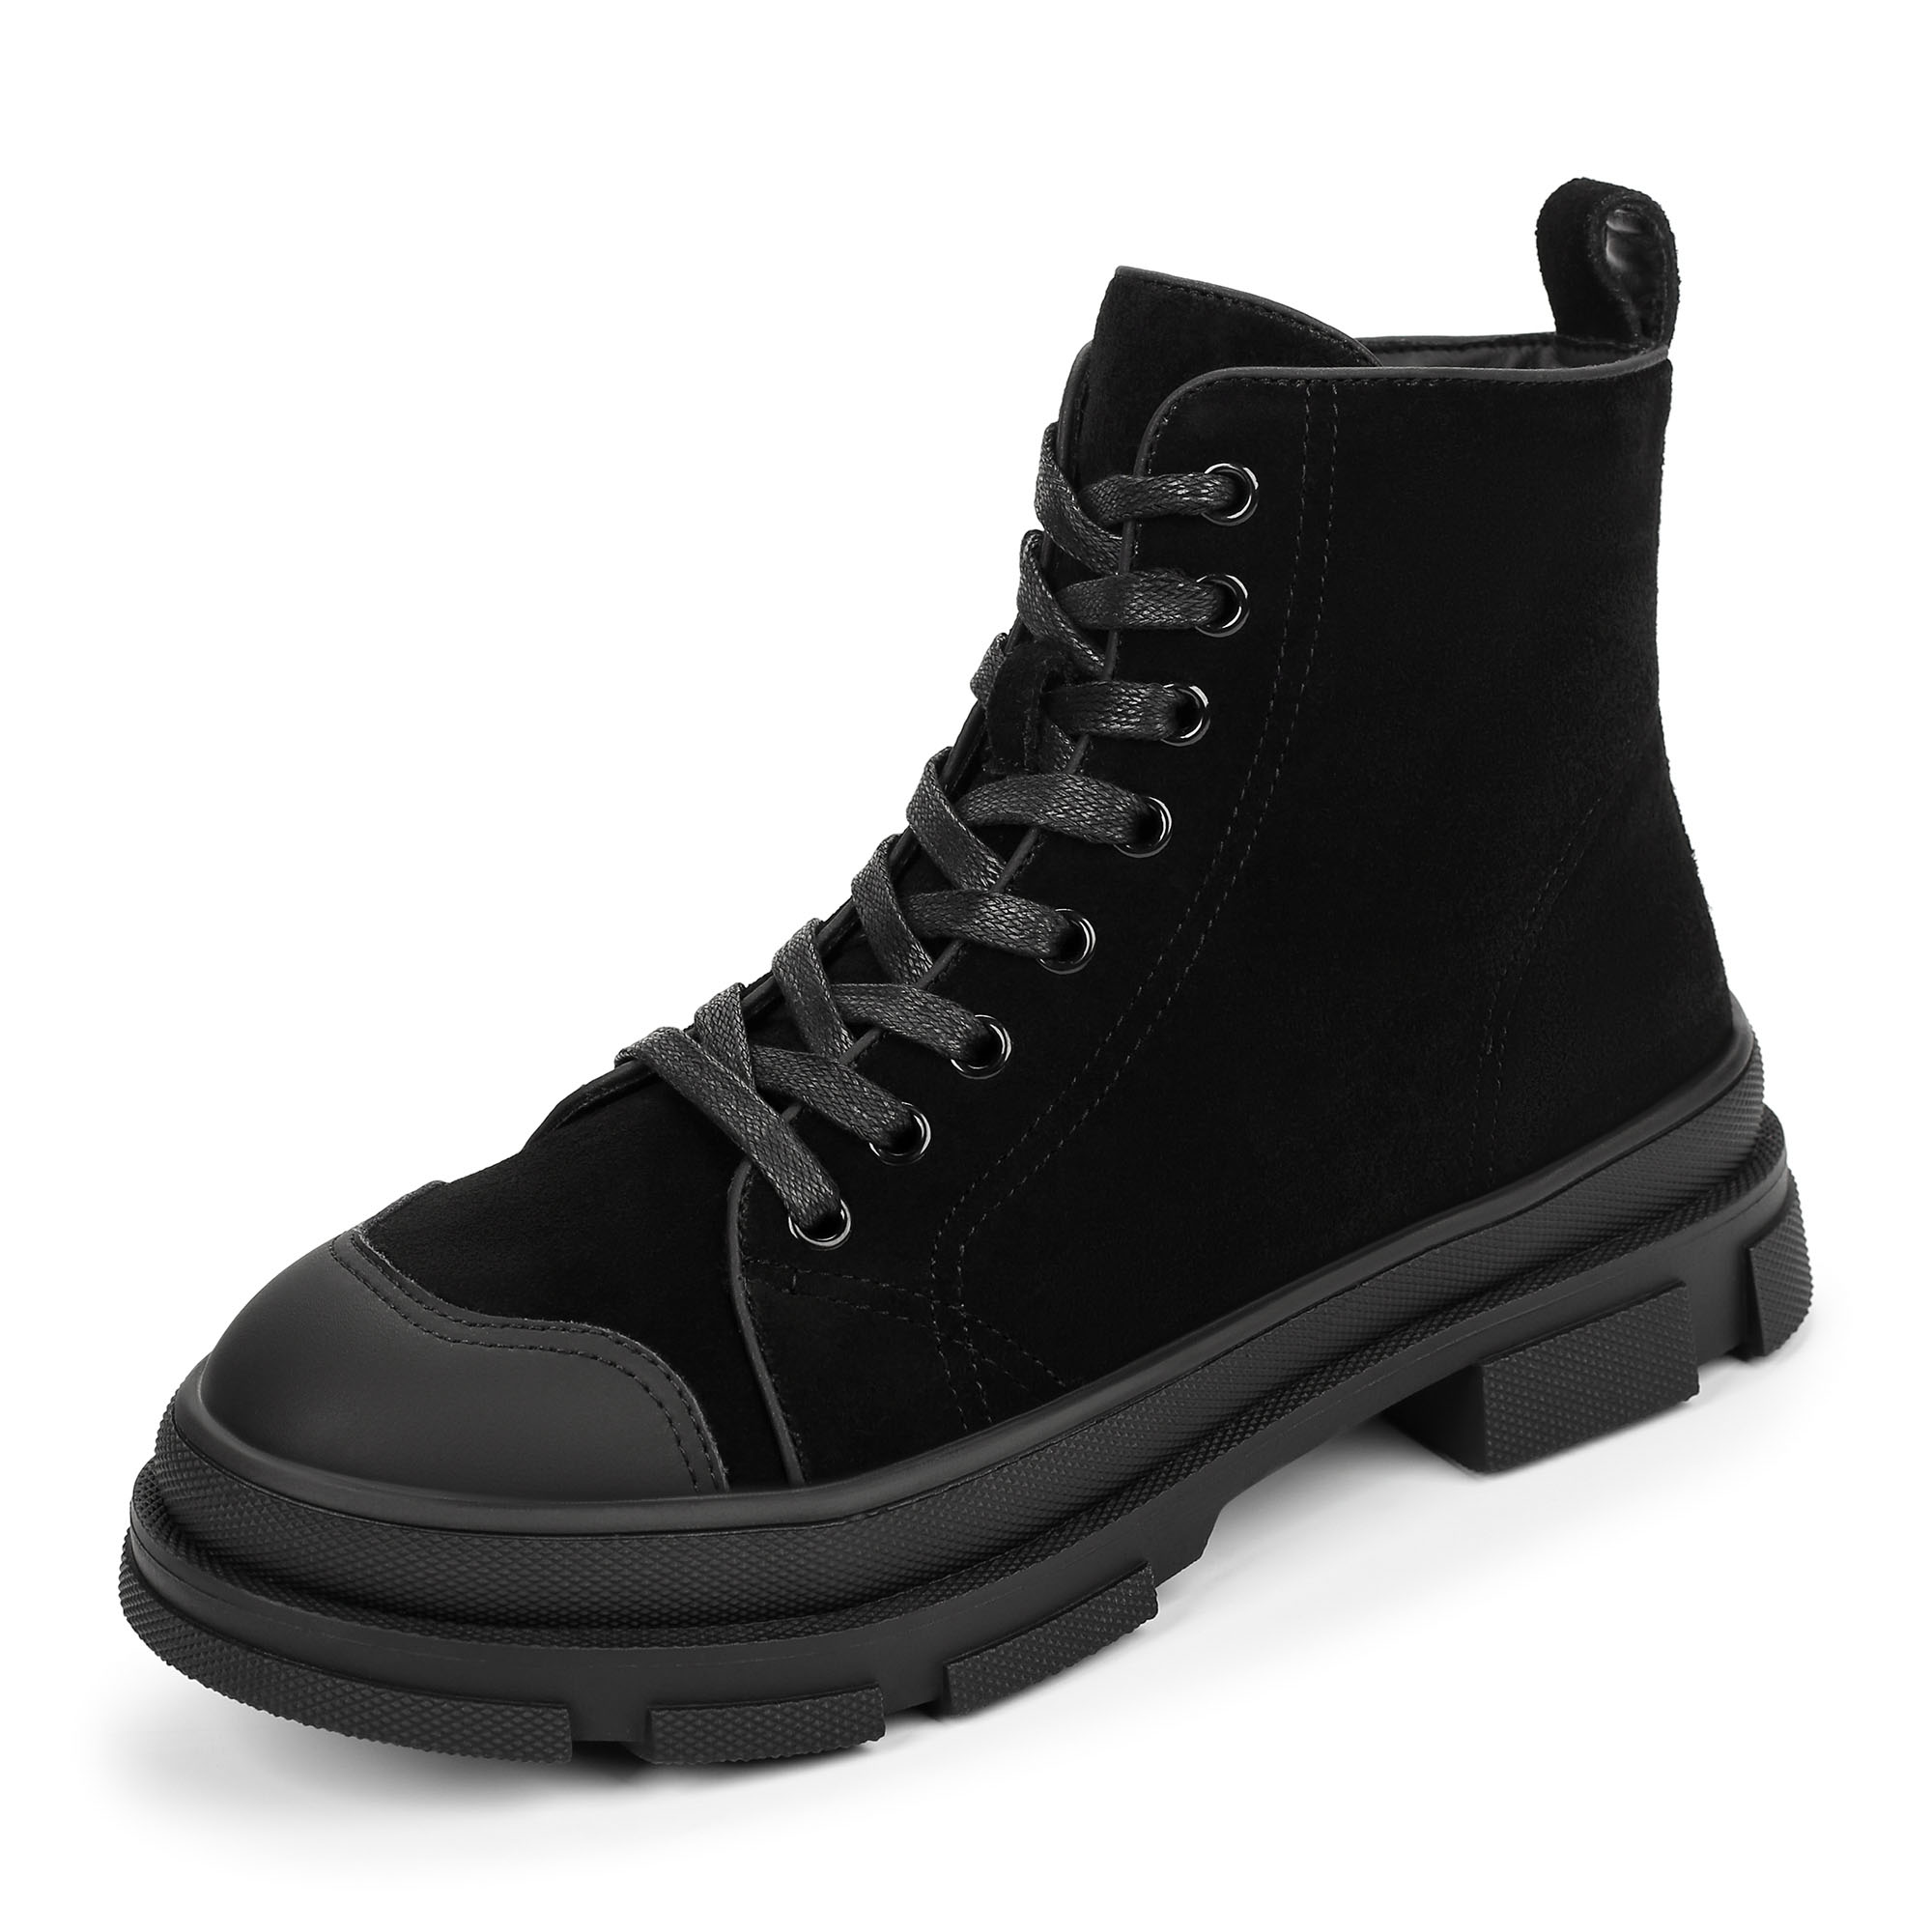 Ботинки Thomas Munz 234-446A-50202, цвет черный, размер 40 - фото 2